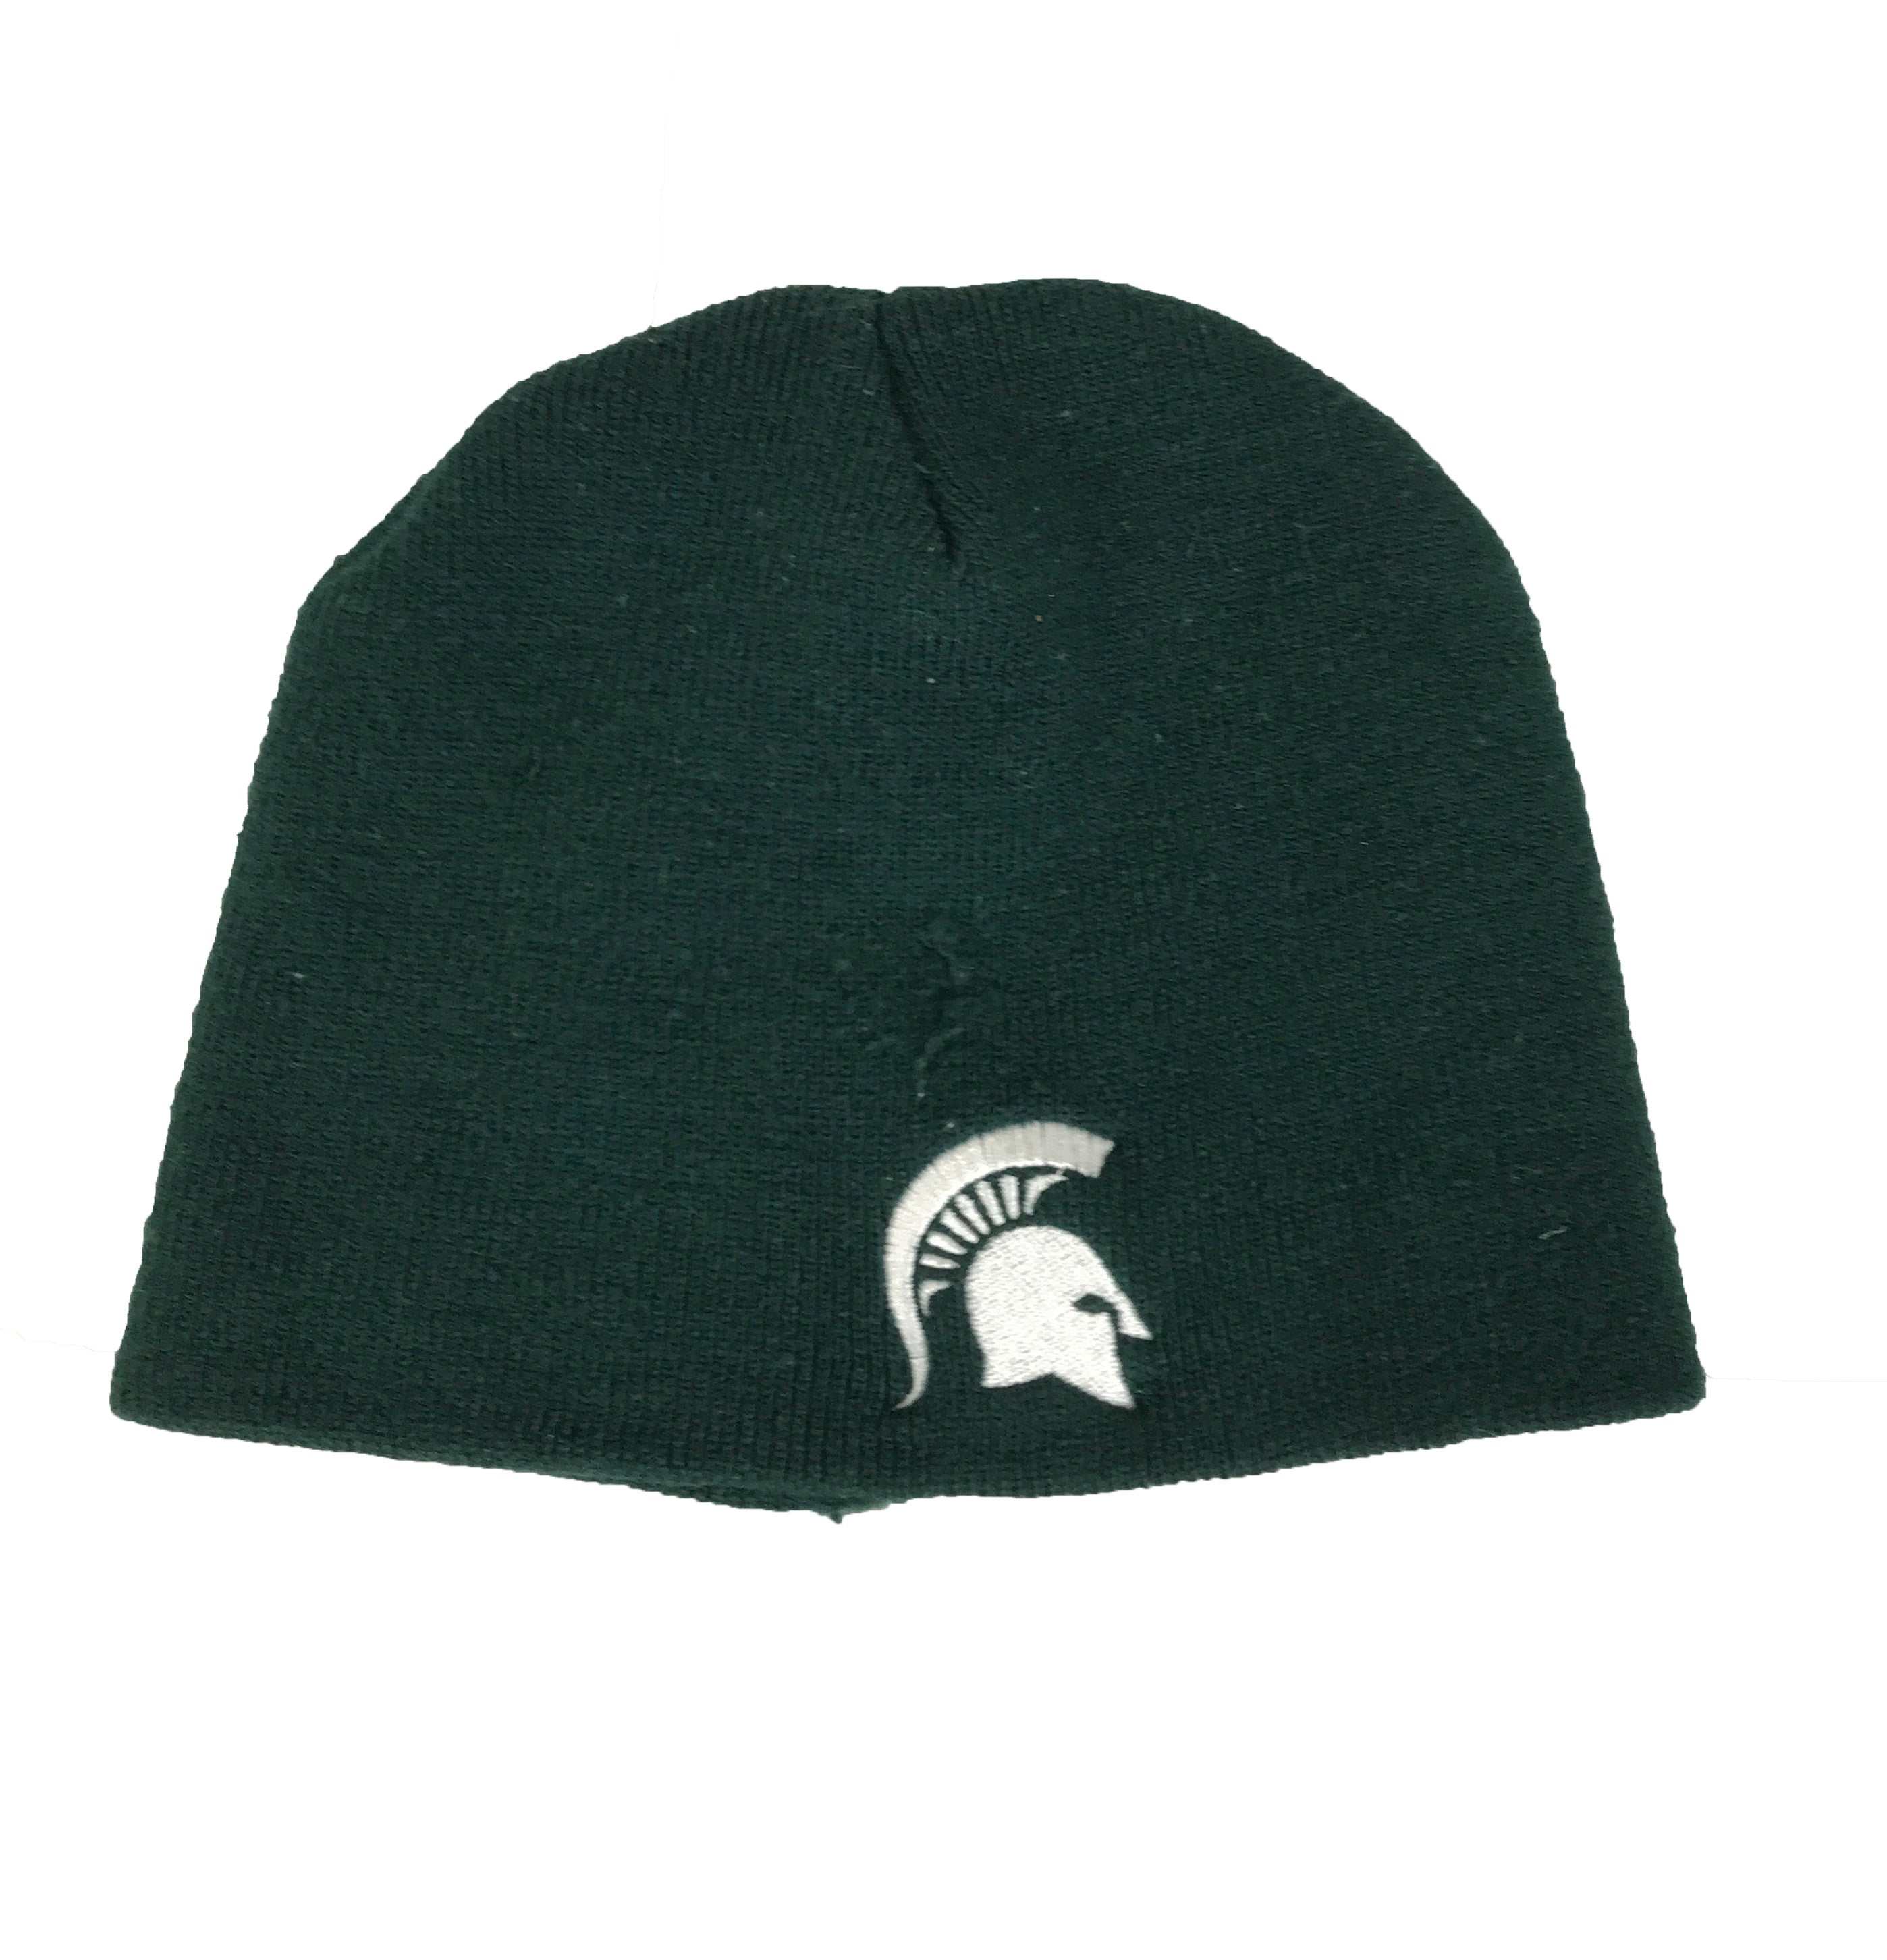 MSU Green Children's Beanie Hat